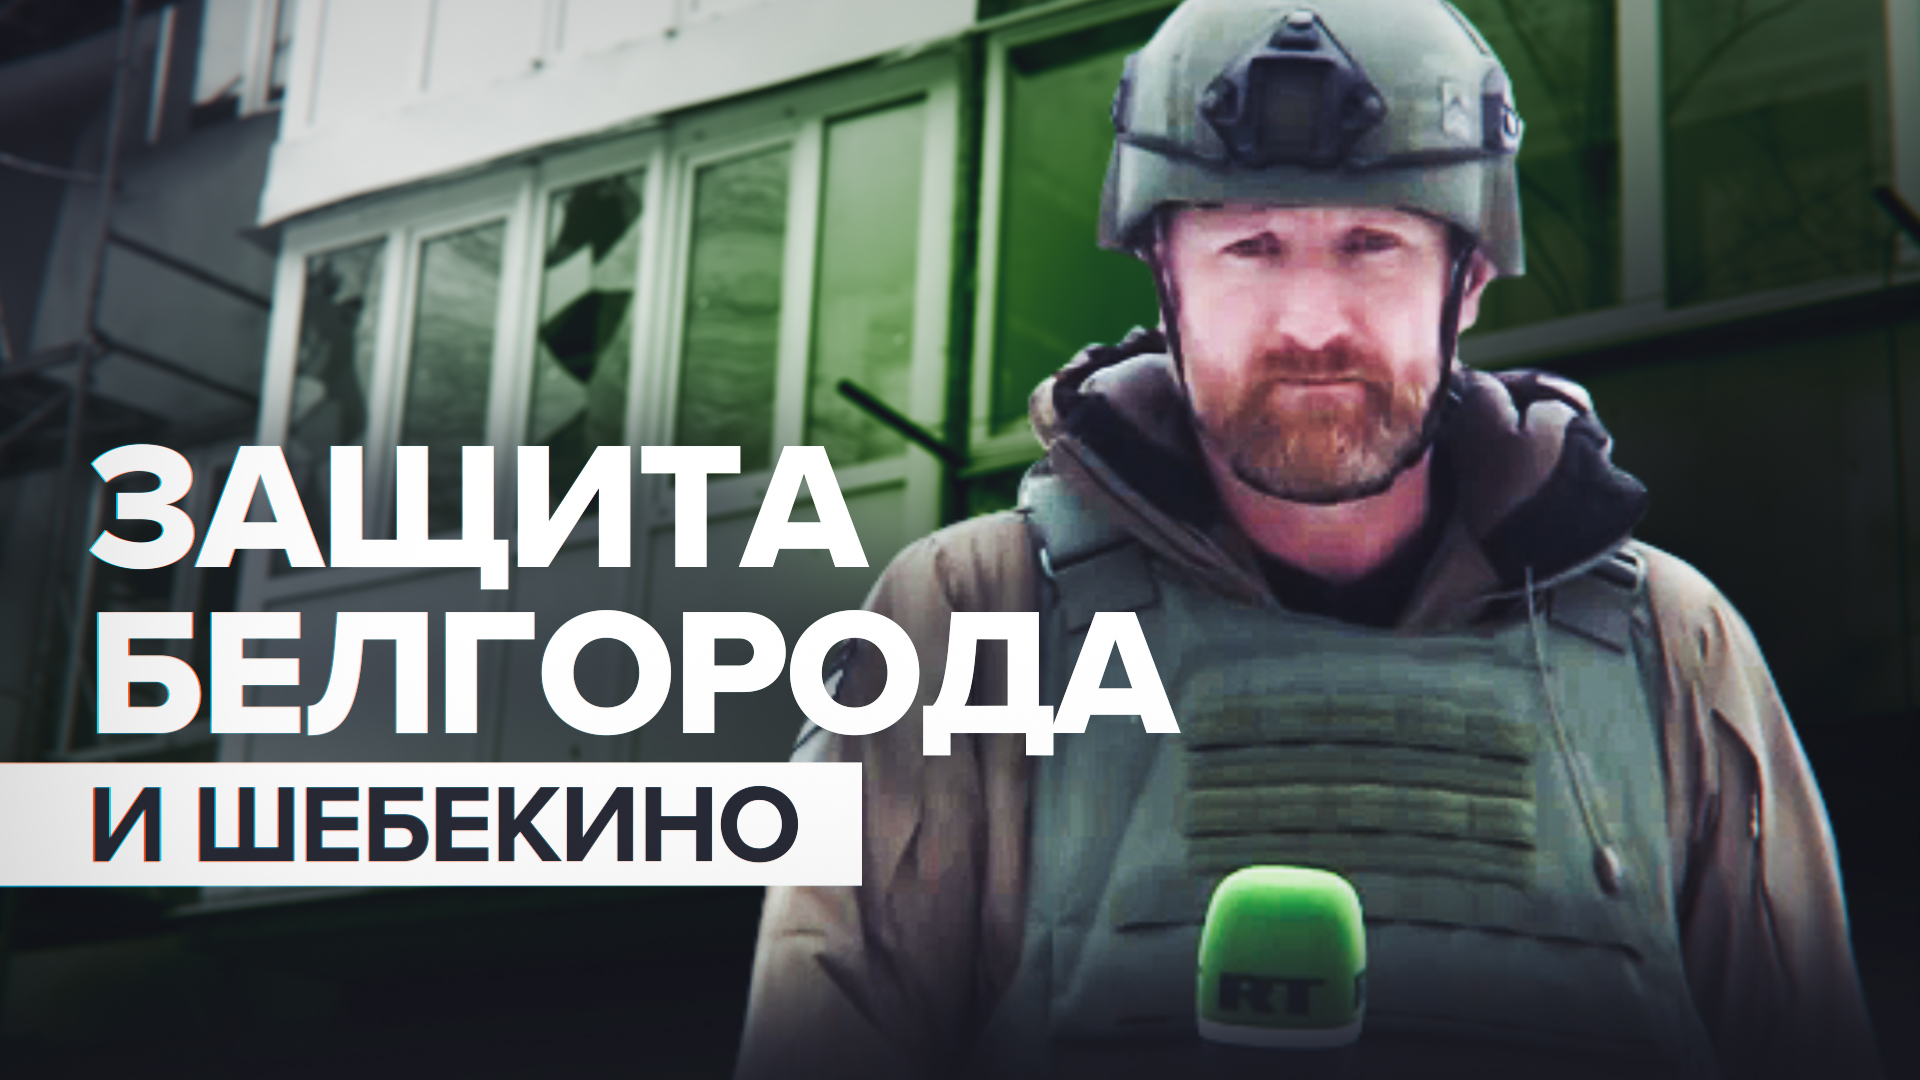 Вопреки обстрелам: как Белгород и Шебекино живут под угрозой атак ВСУ